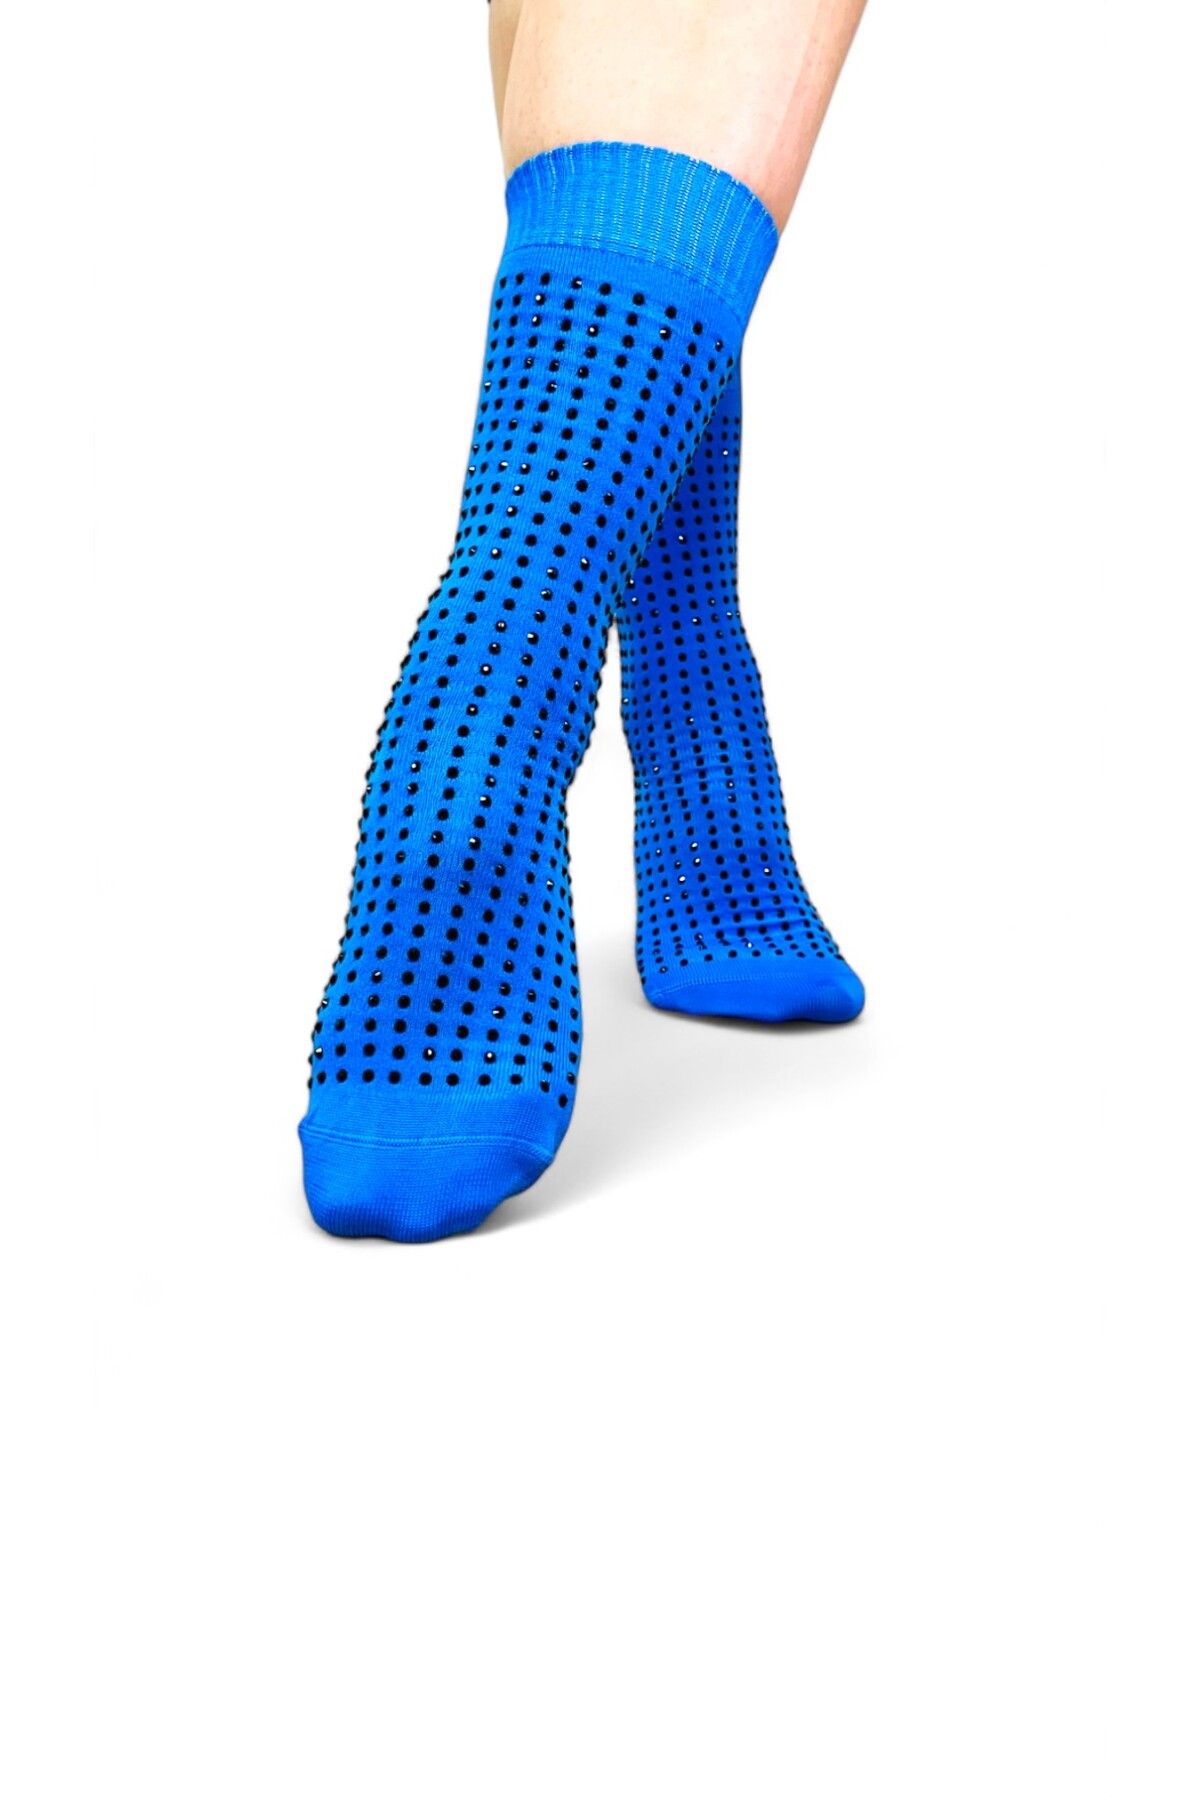 Muse Of Socks Fully M'gems Mavi Kaydırmaz Pilates Ve Yoga Çorabı